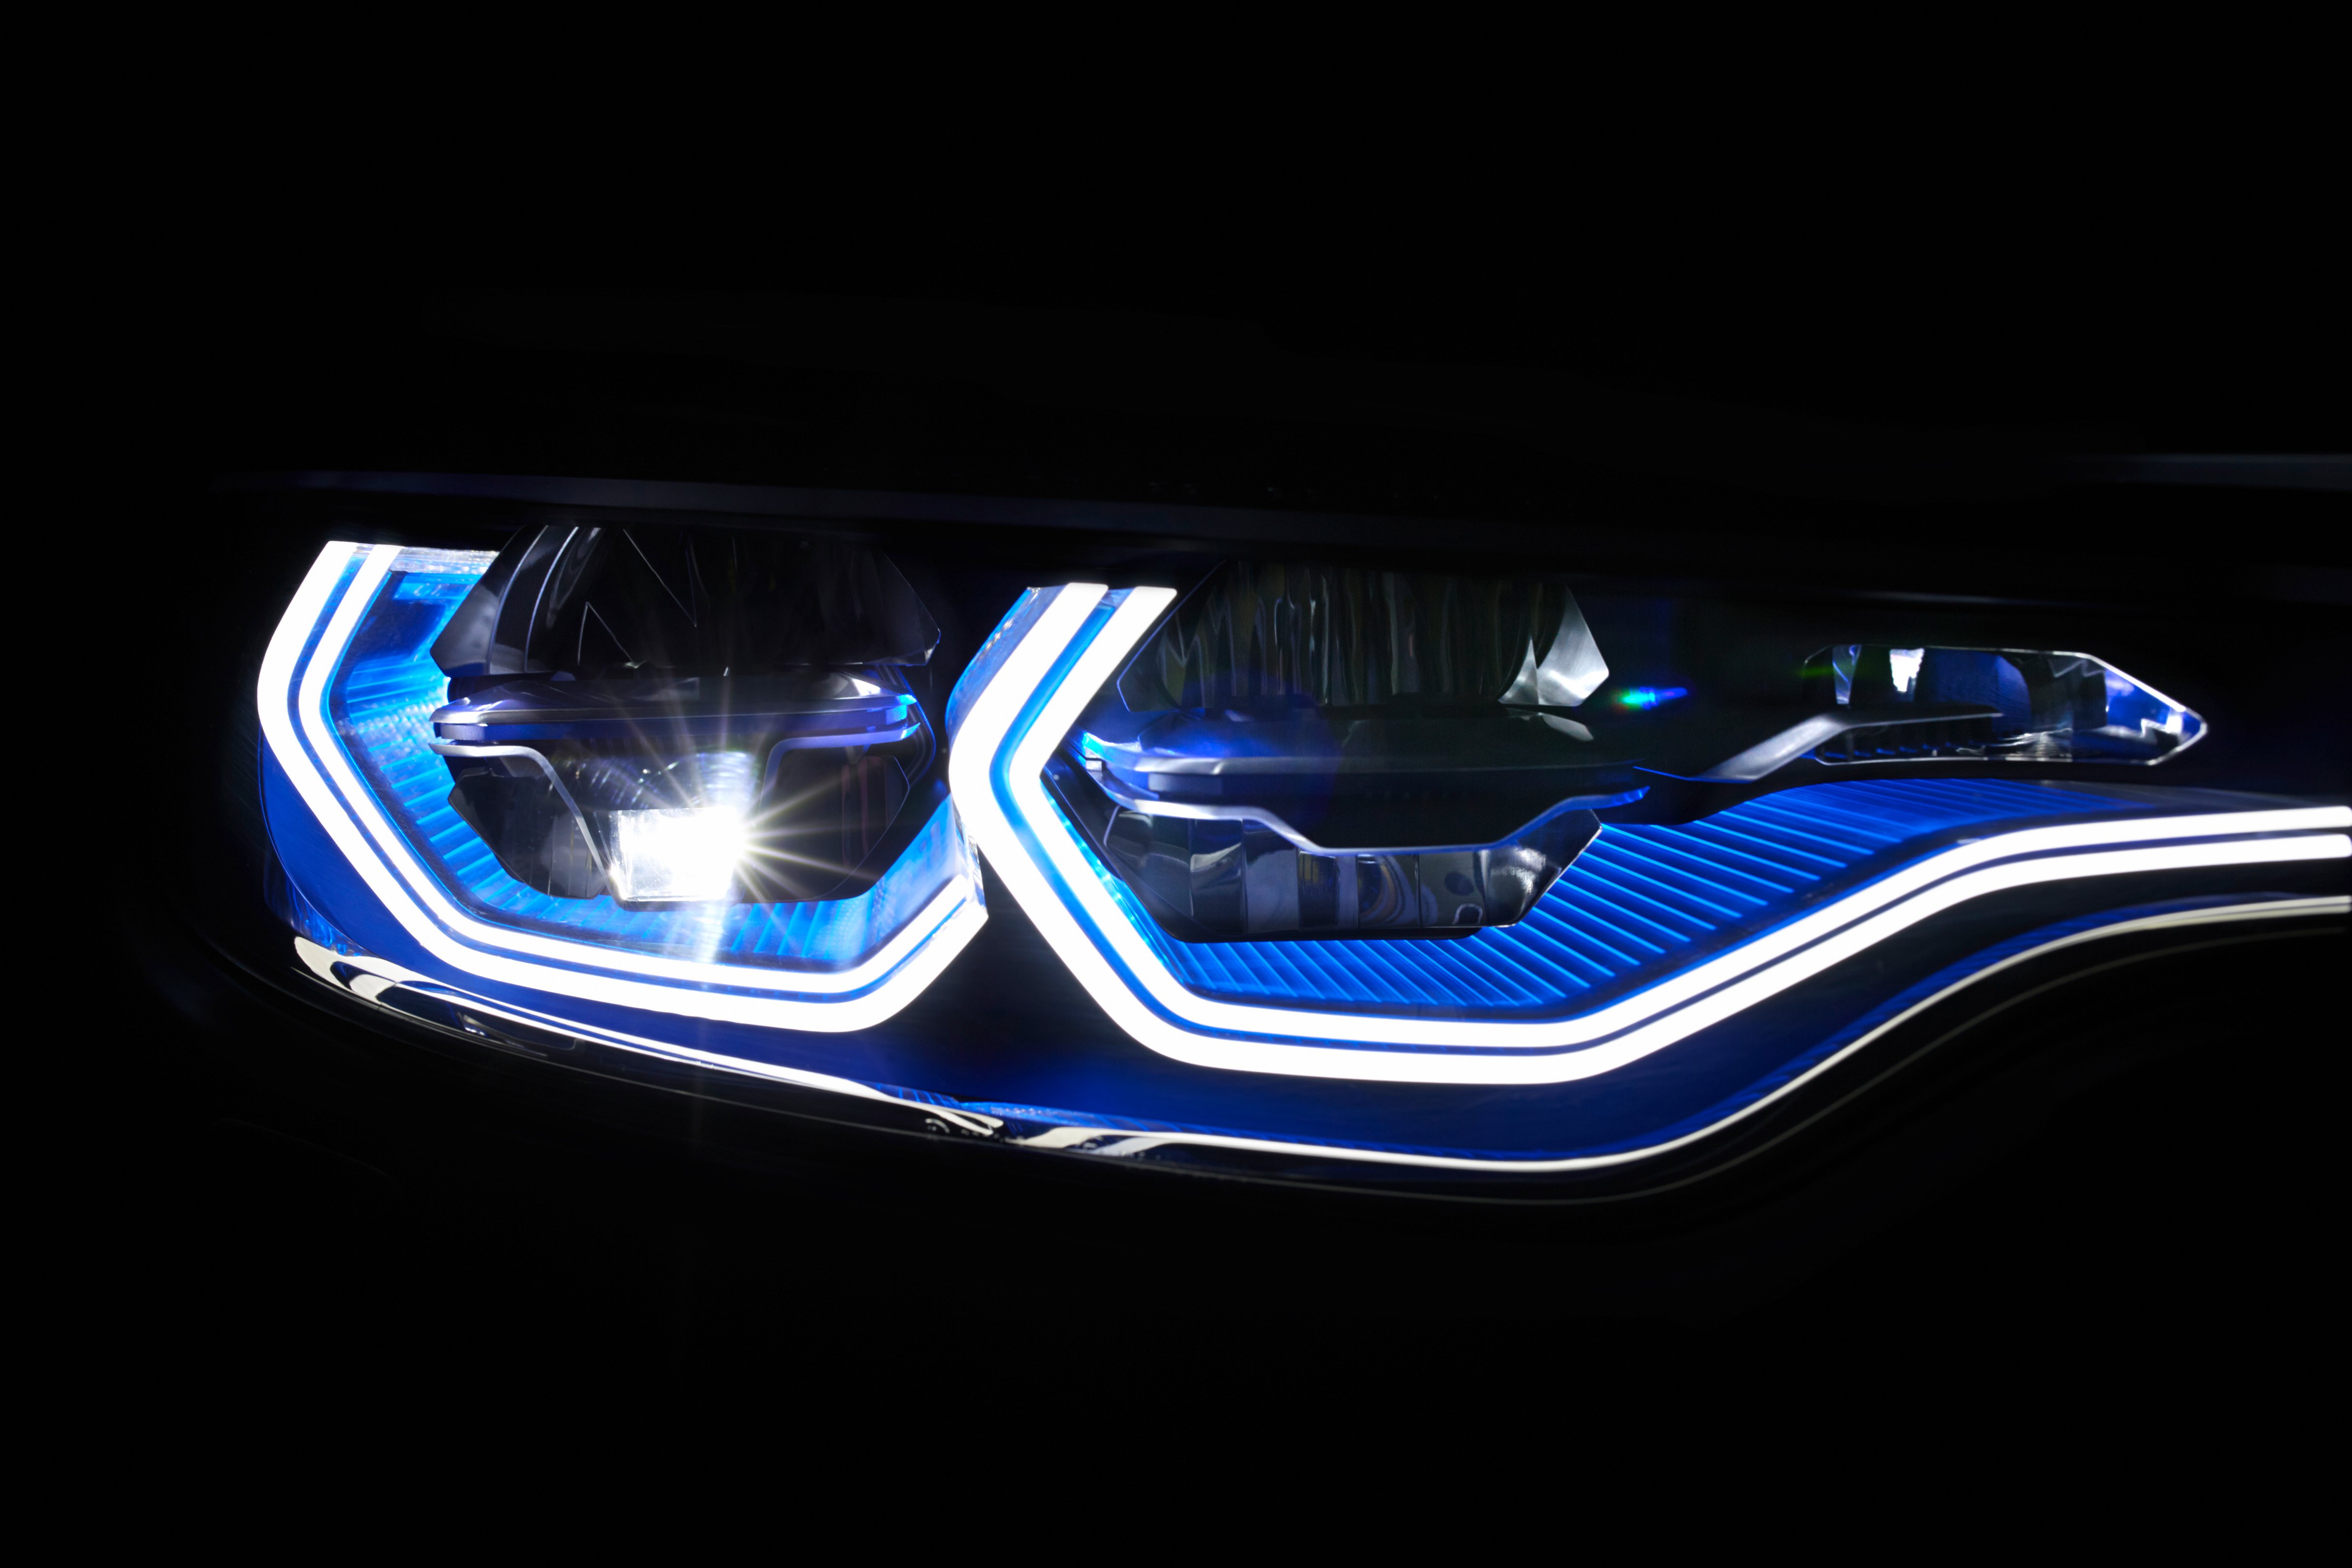 Bmw M4 Concept Iconic Lights 0017 Paul Tans Automotive News 